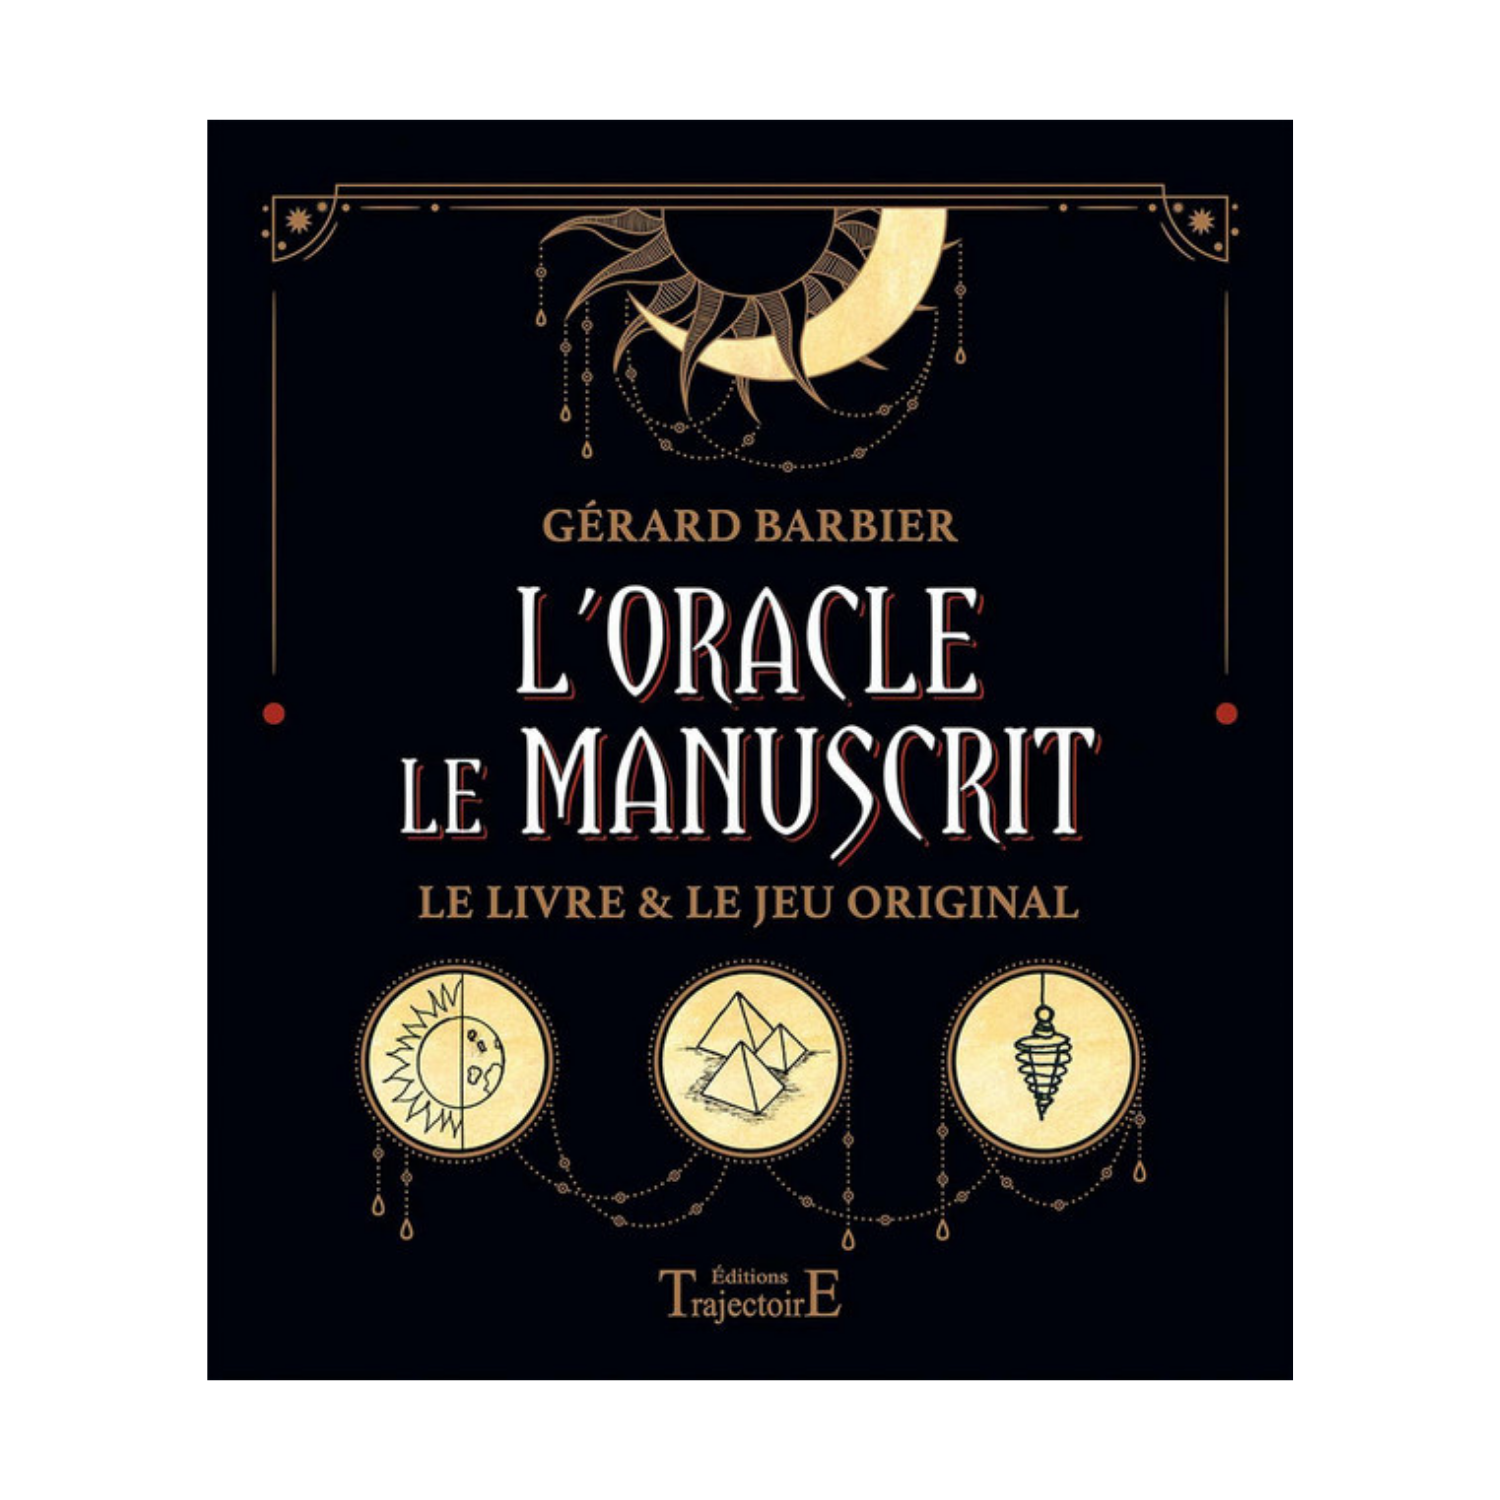 L'oracle le manuscrit le livre & le jeu original